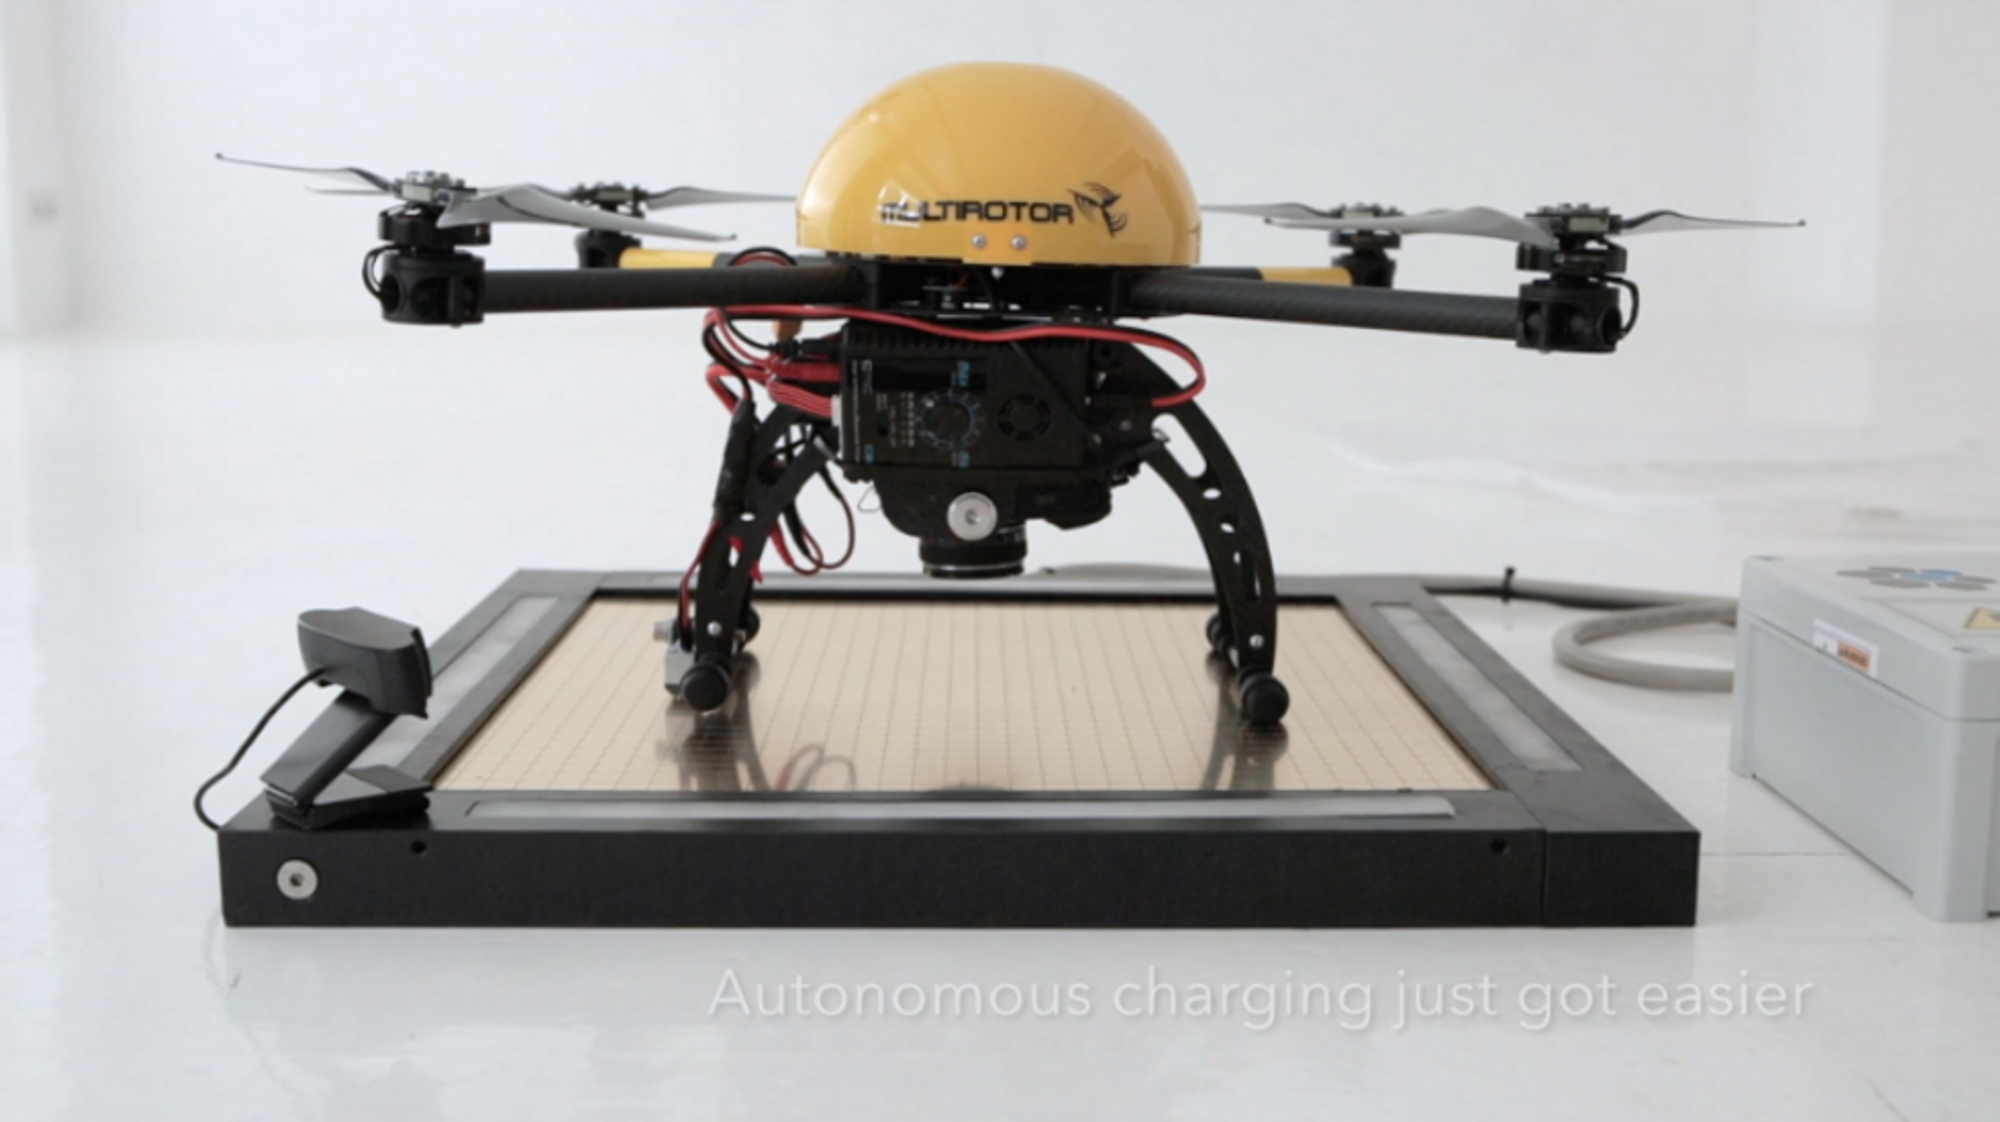 A photograph of an Autonomous Security Drone